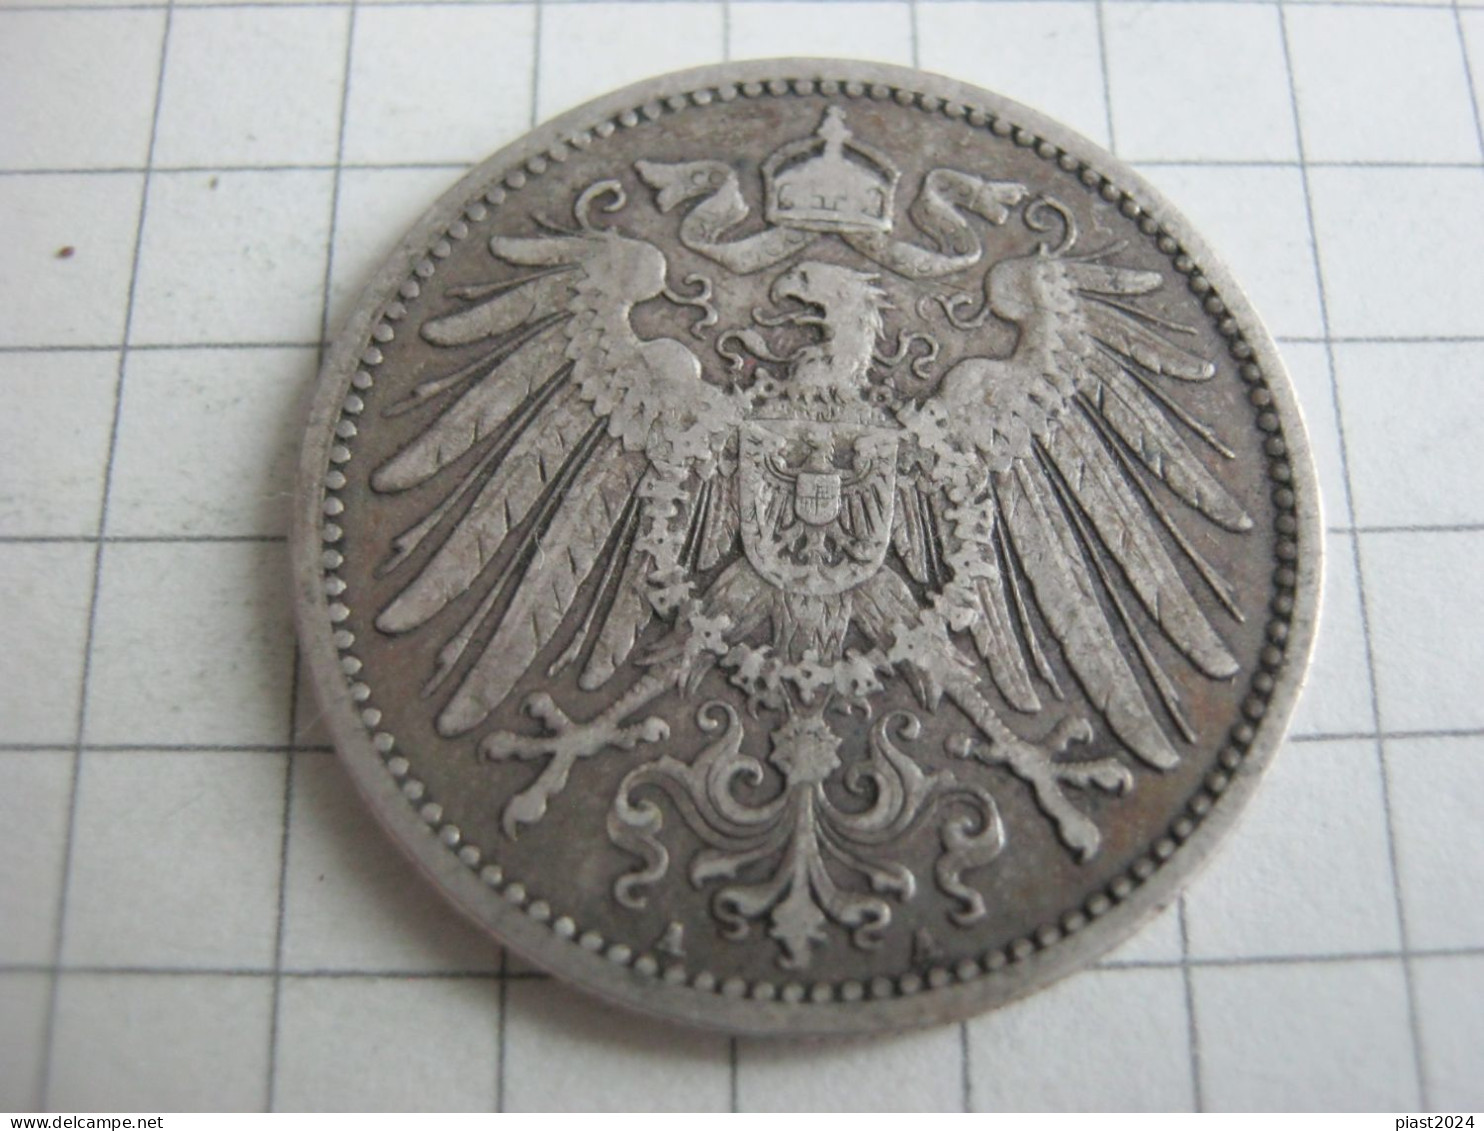 Germany 1 Mark 1901 A - 1 Mark